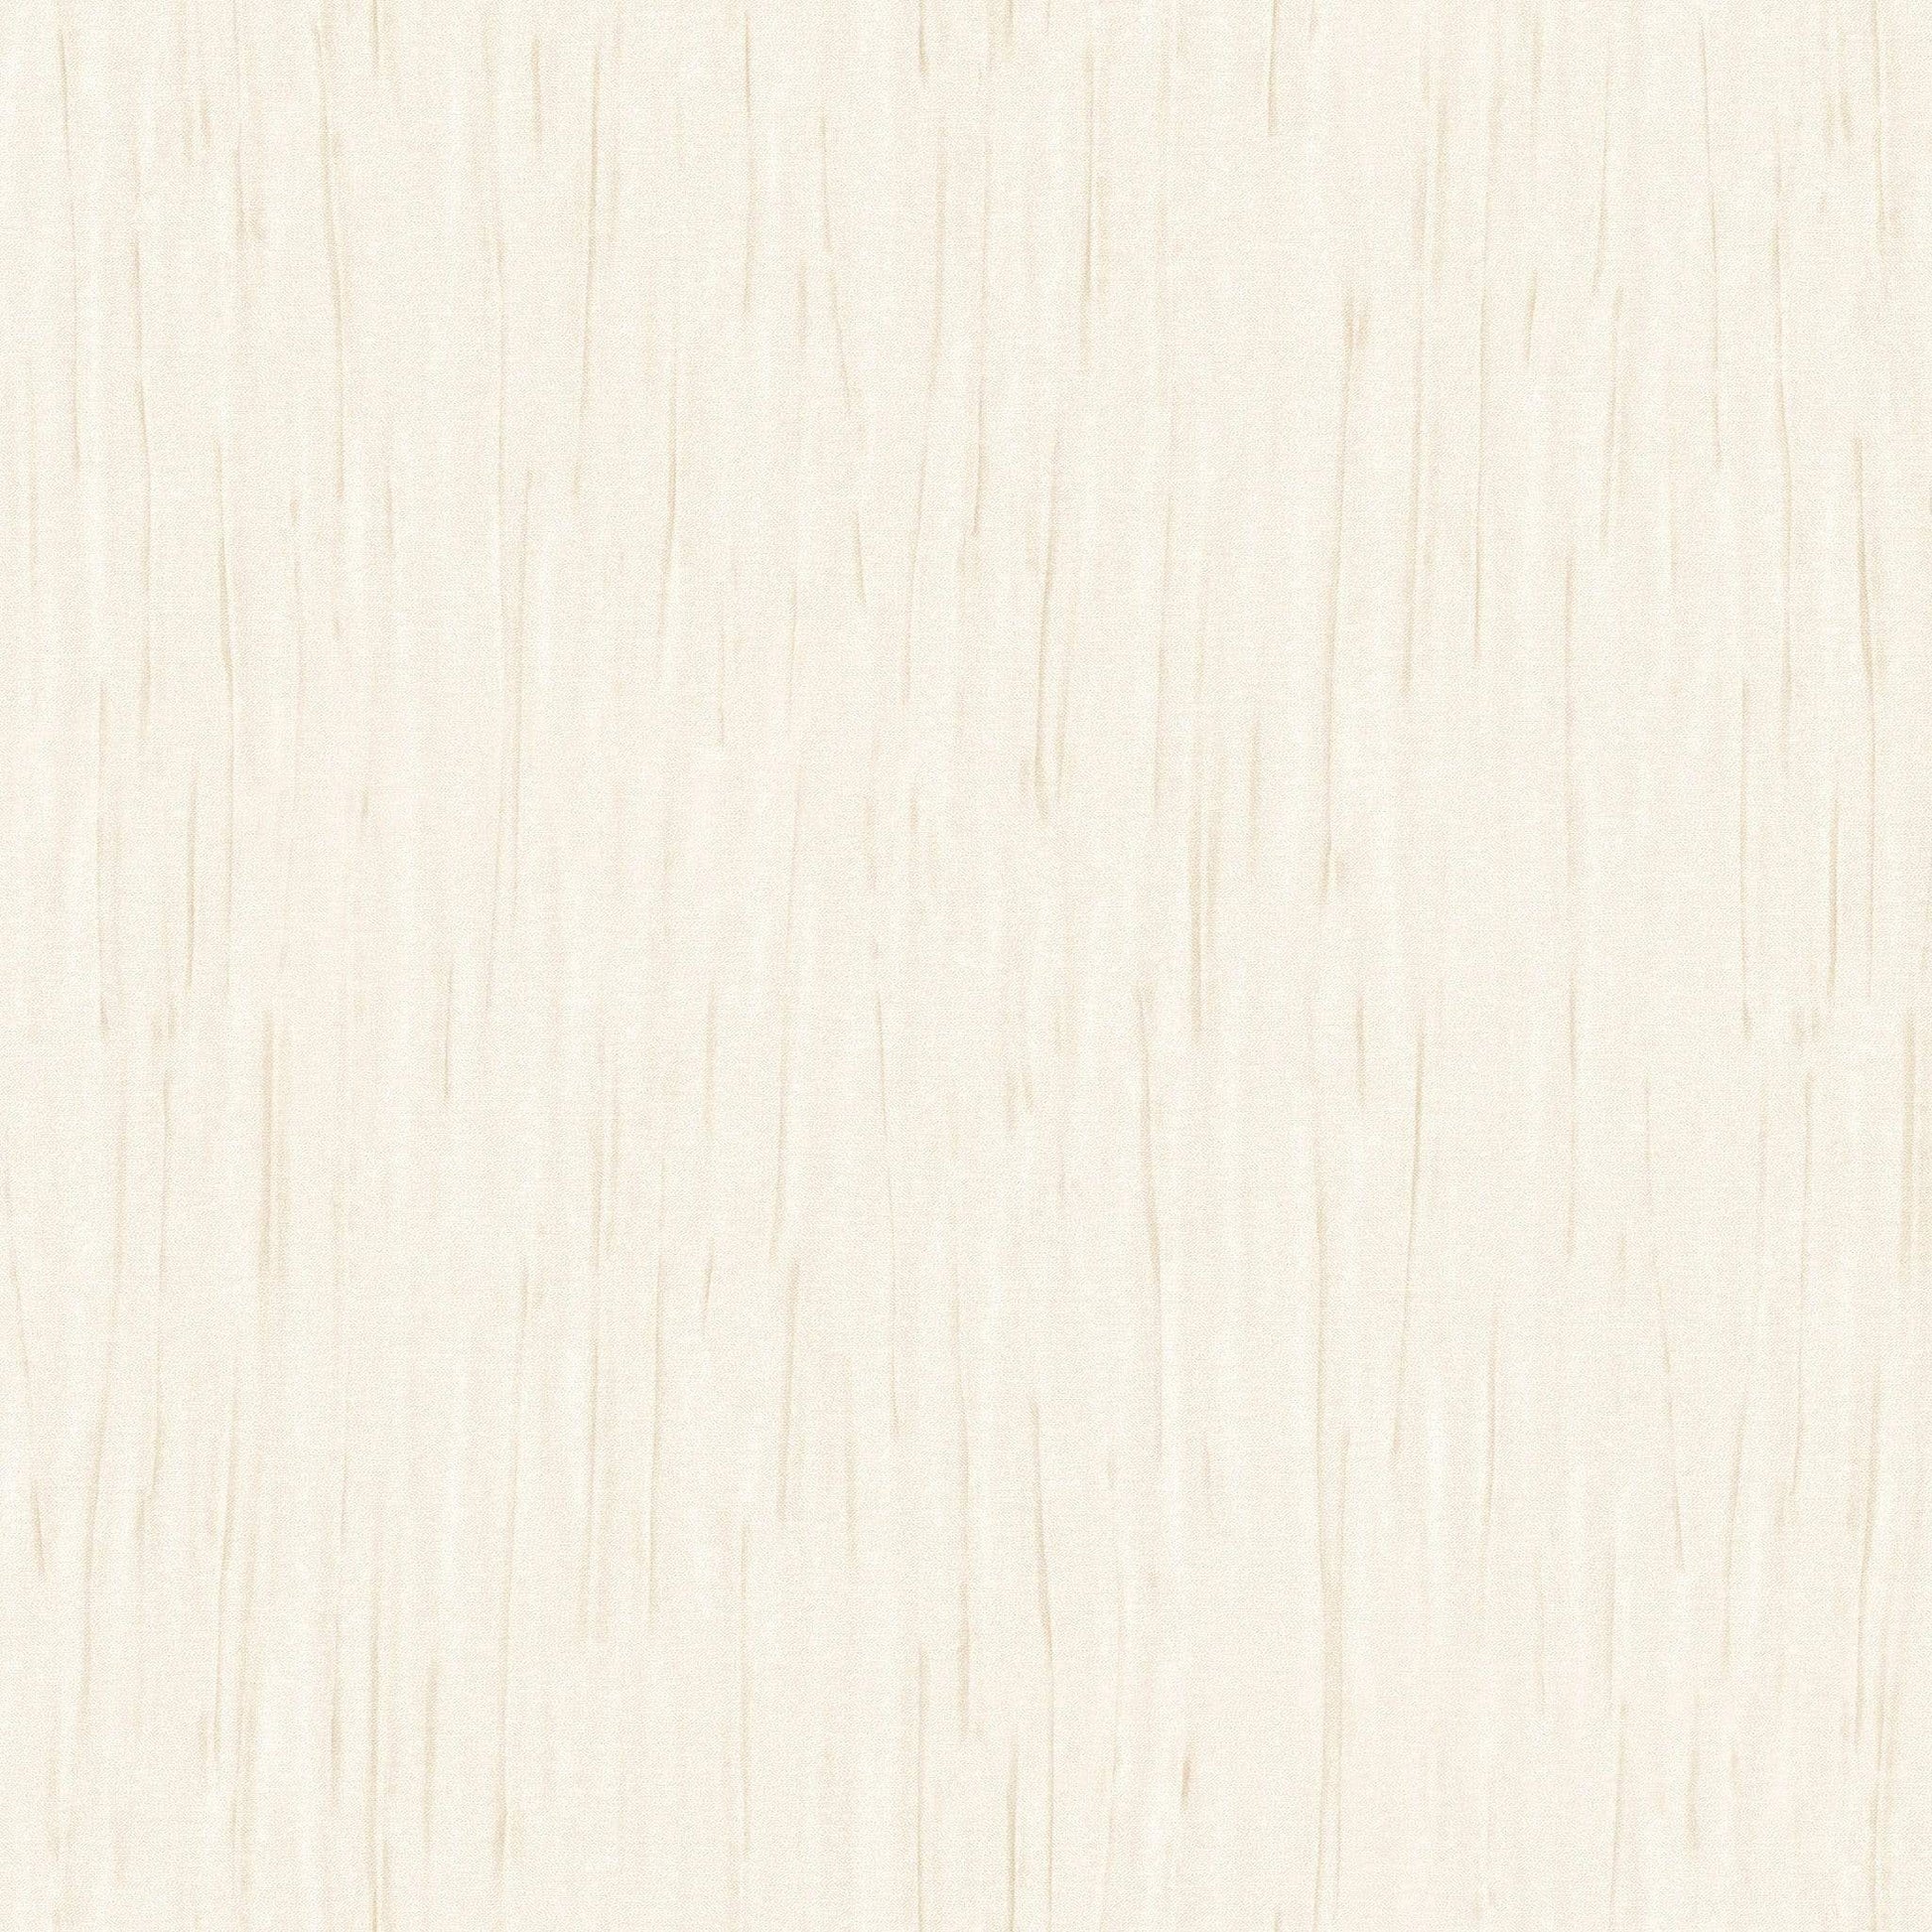 Wallpaper  -  Holden Francesco Champagne Wallpaper - 33721  -  50154755